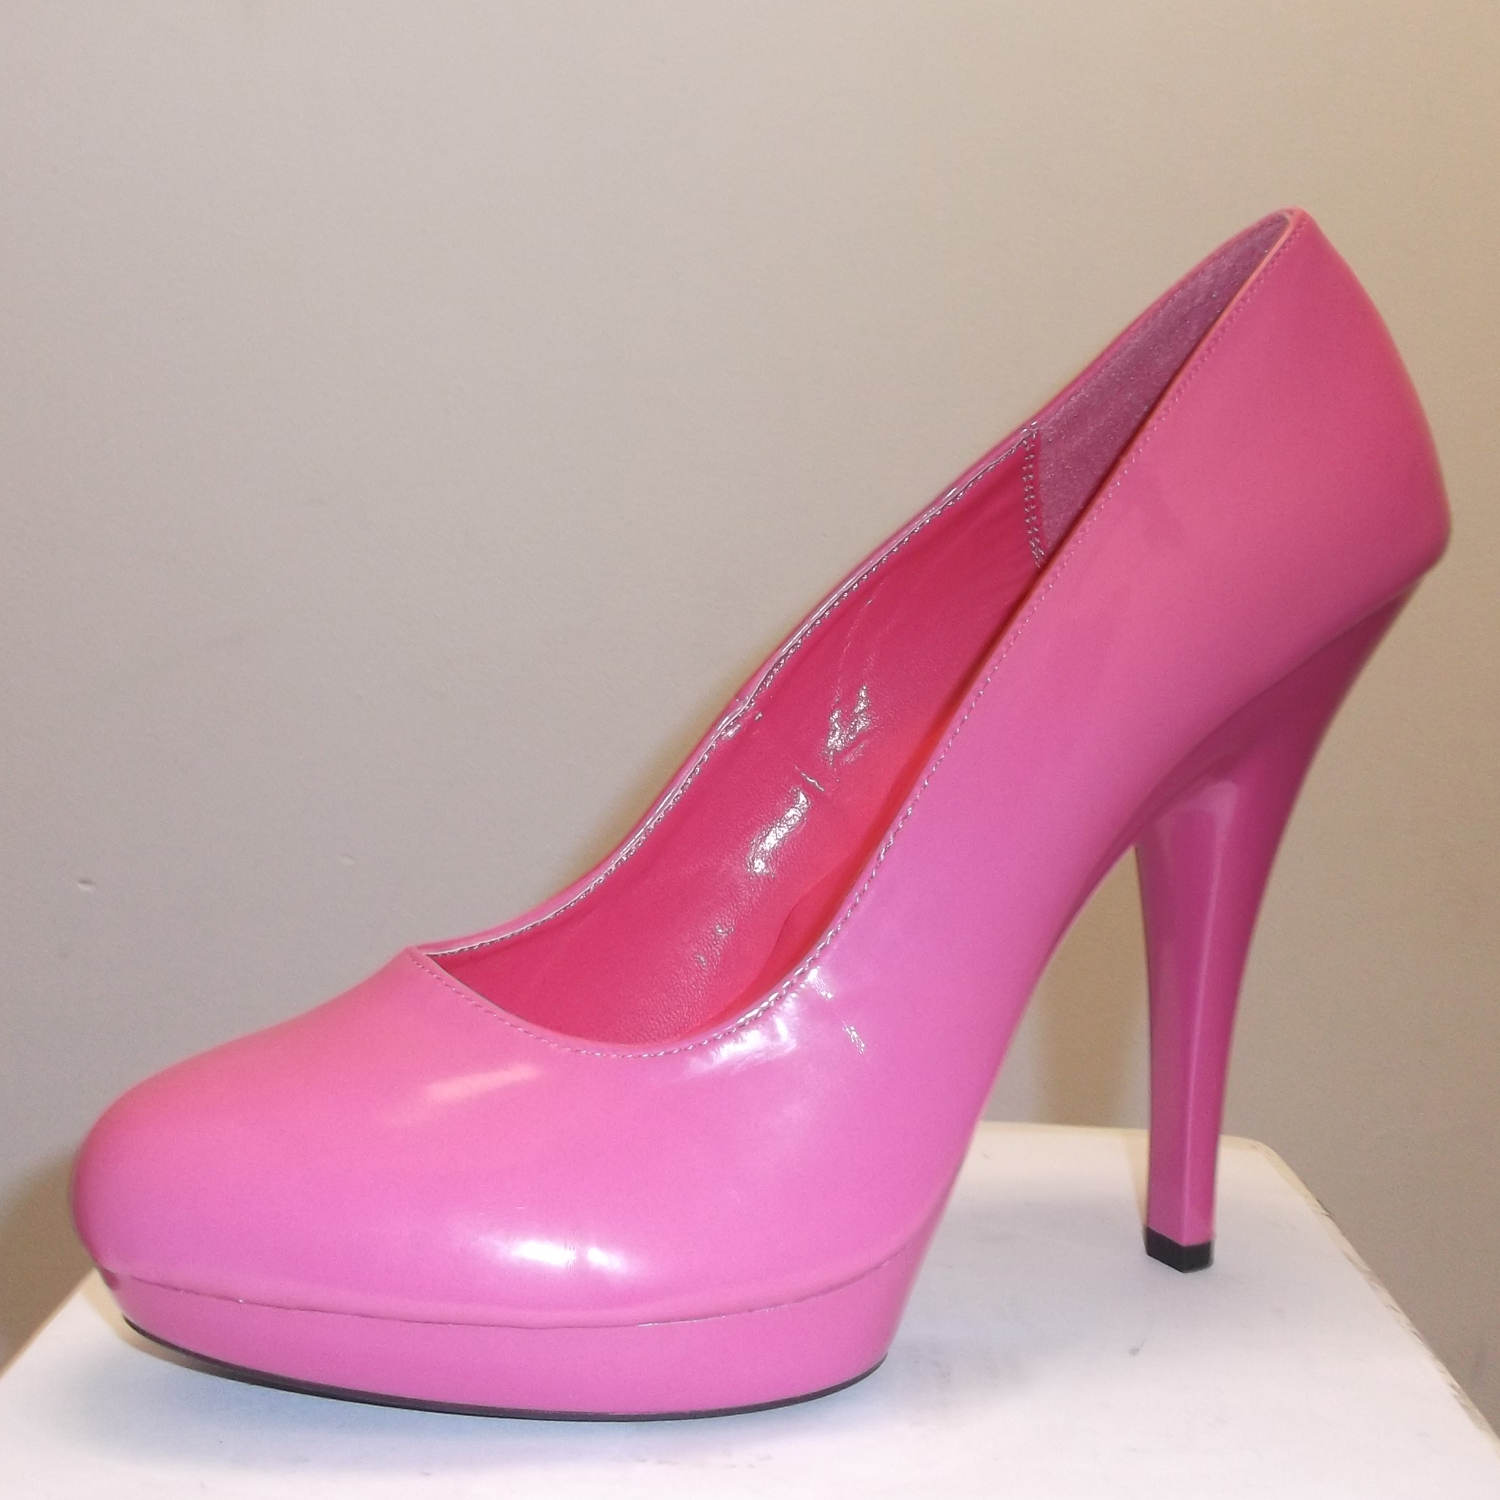 Buy > hot pink wide width heels > in stock